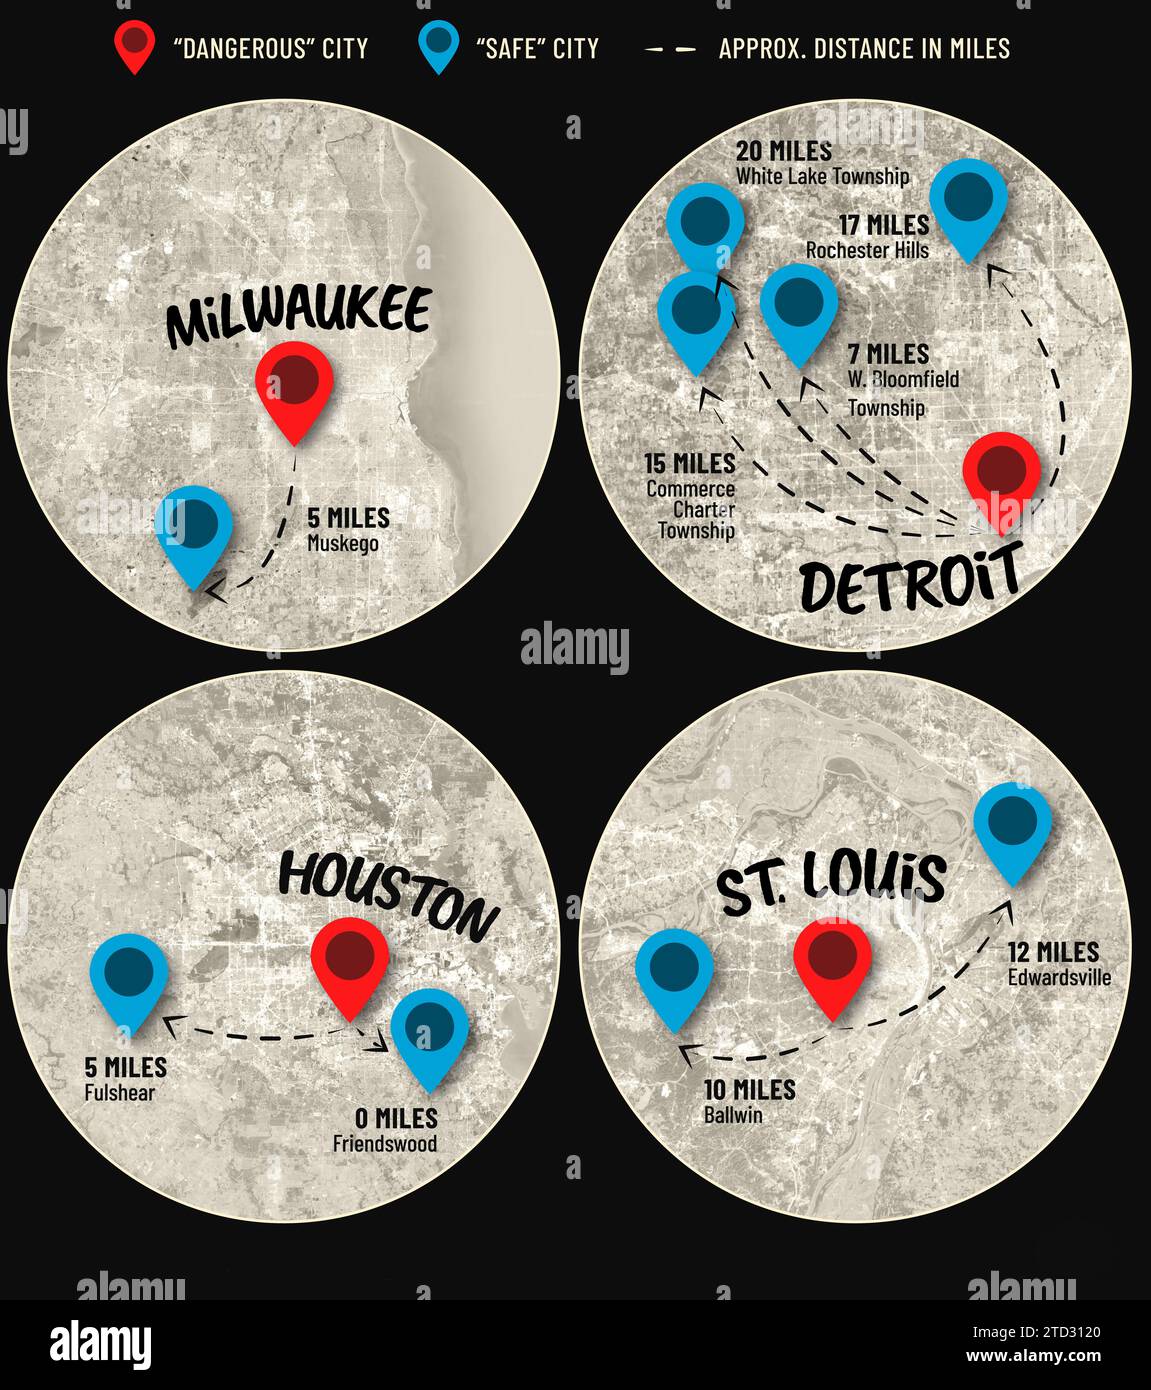 Illustrazione infografica che mostra città sicure vicino a quattro città pericolose negli Stati Uniti. Foto Stock